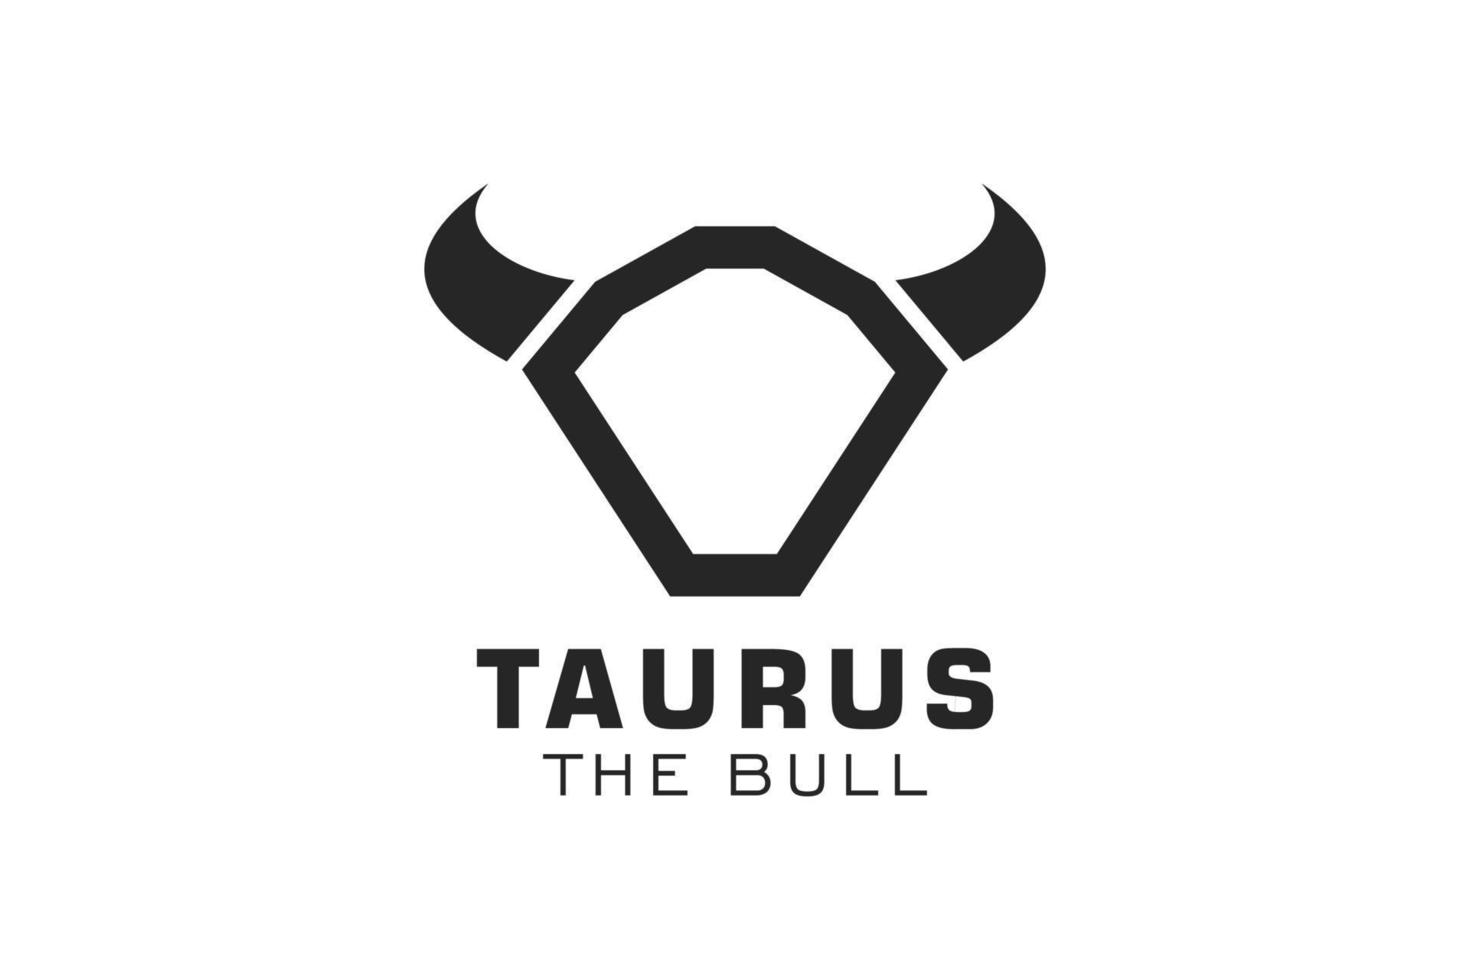 Letter O logo, Bull logo,head bull logo, monogram Logo Design Template Element vector